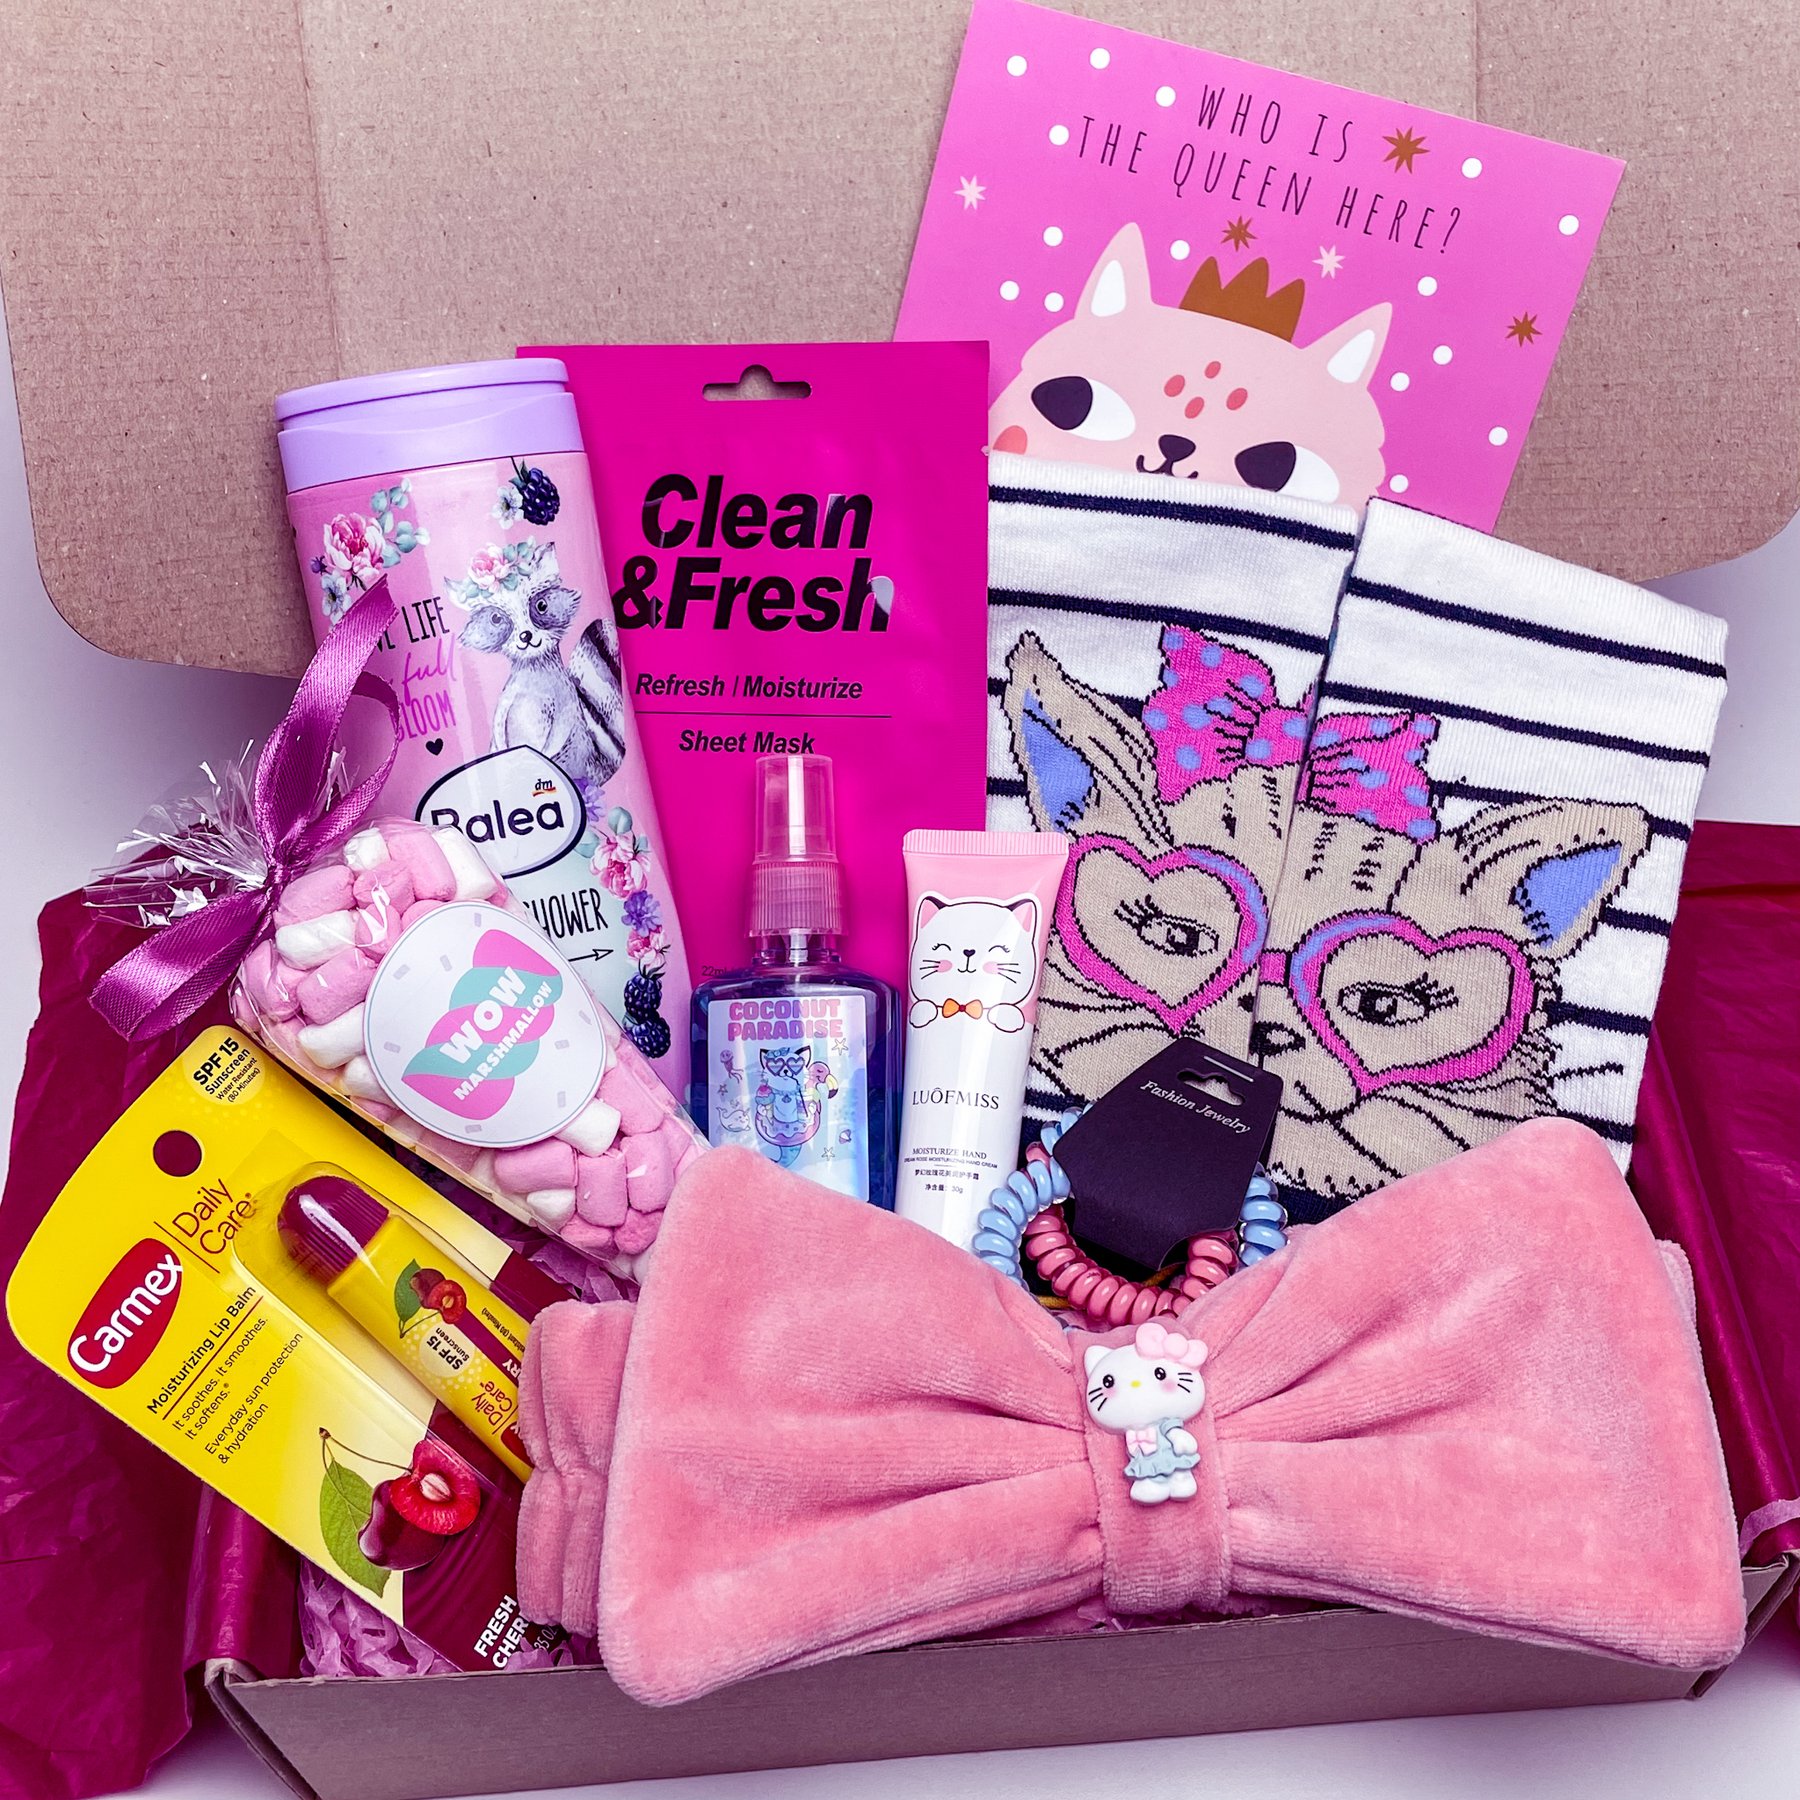 Подарунковий бокс для дівчинки Wow Boxes "Cat Box №3"